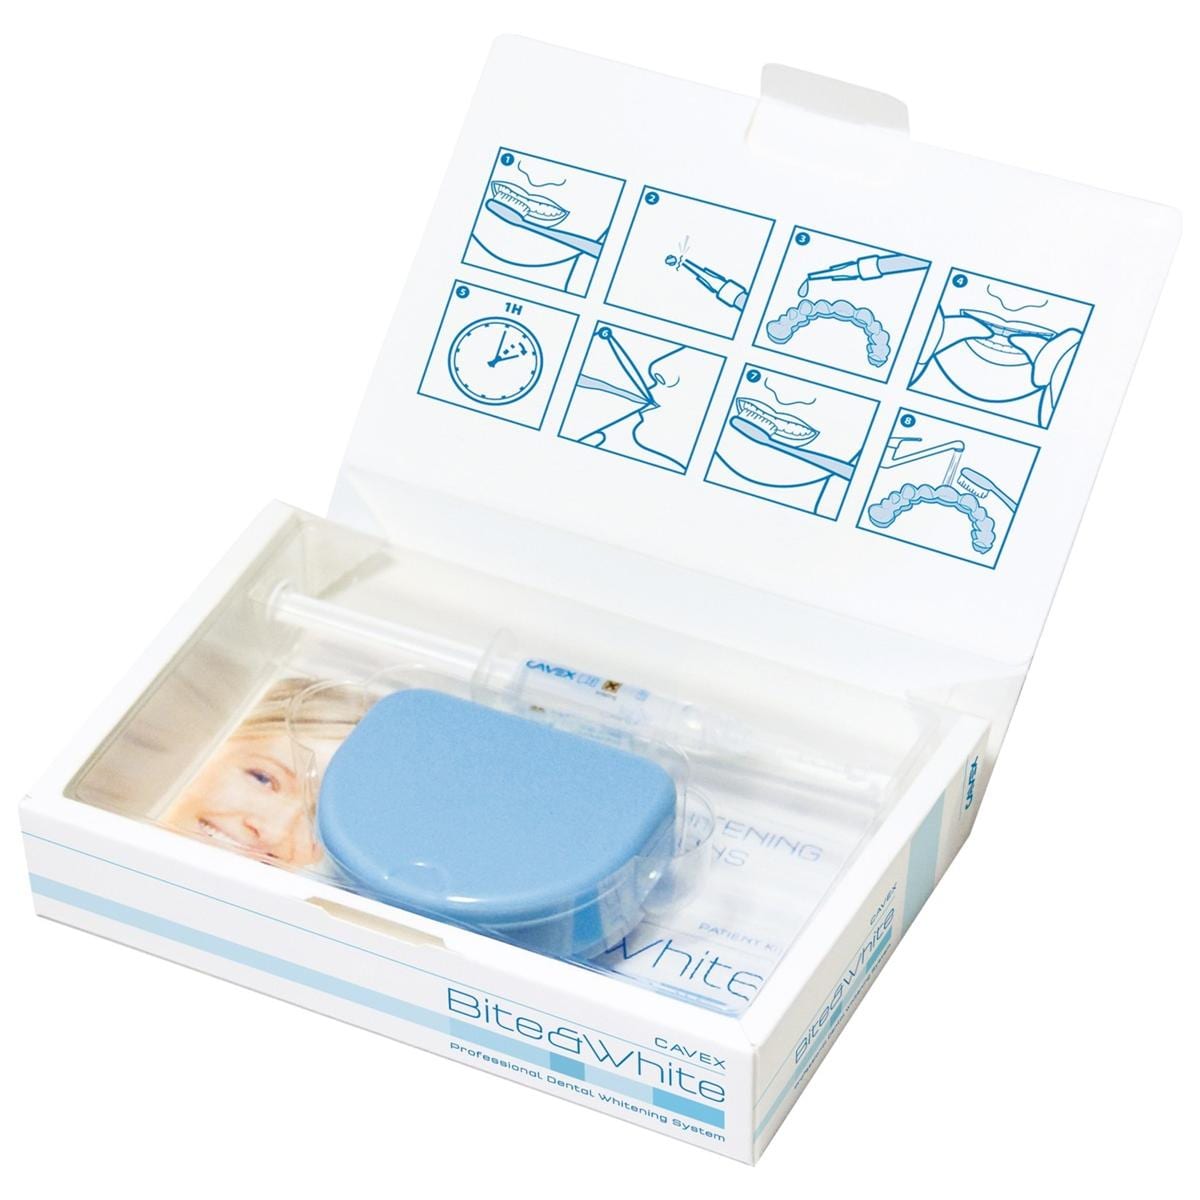 Bite&White - Patient Kit, BW000, 2 seringues de 3 ml, 1 bote de rangement et teintier.